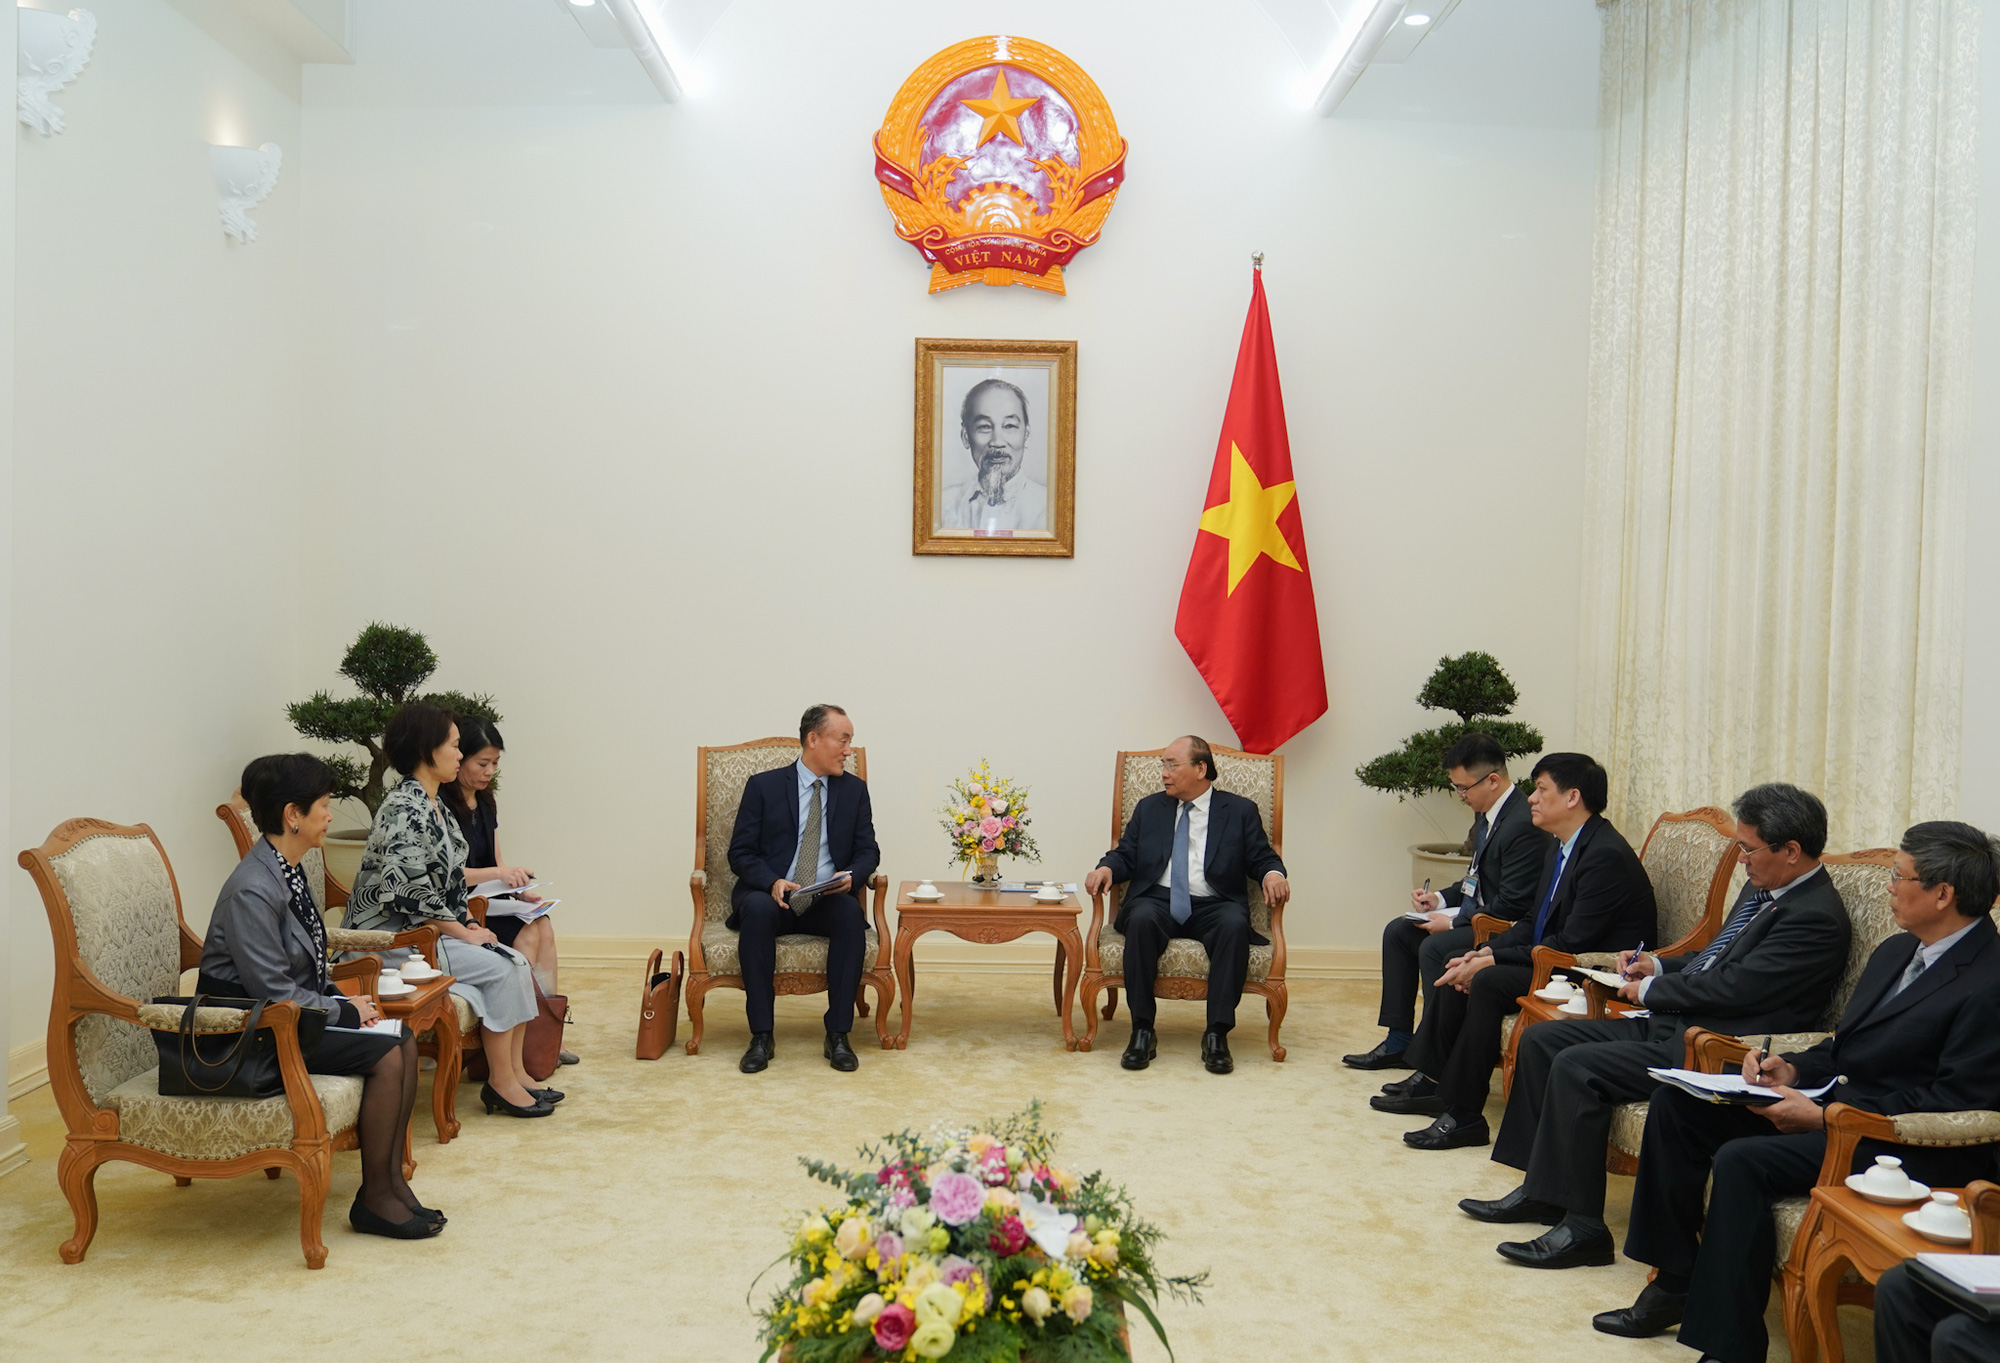 Trưởng đại diện WHO: Chúng tôi ấn tượng với sự hợp tác của người dân Việt Nam trước sự chỉ đạo của Chính phủ, mà có được điều đó là do niềm tin của người dân - Ảnh 2.